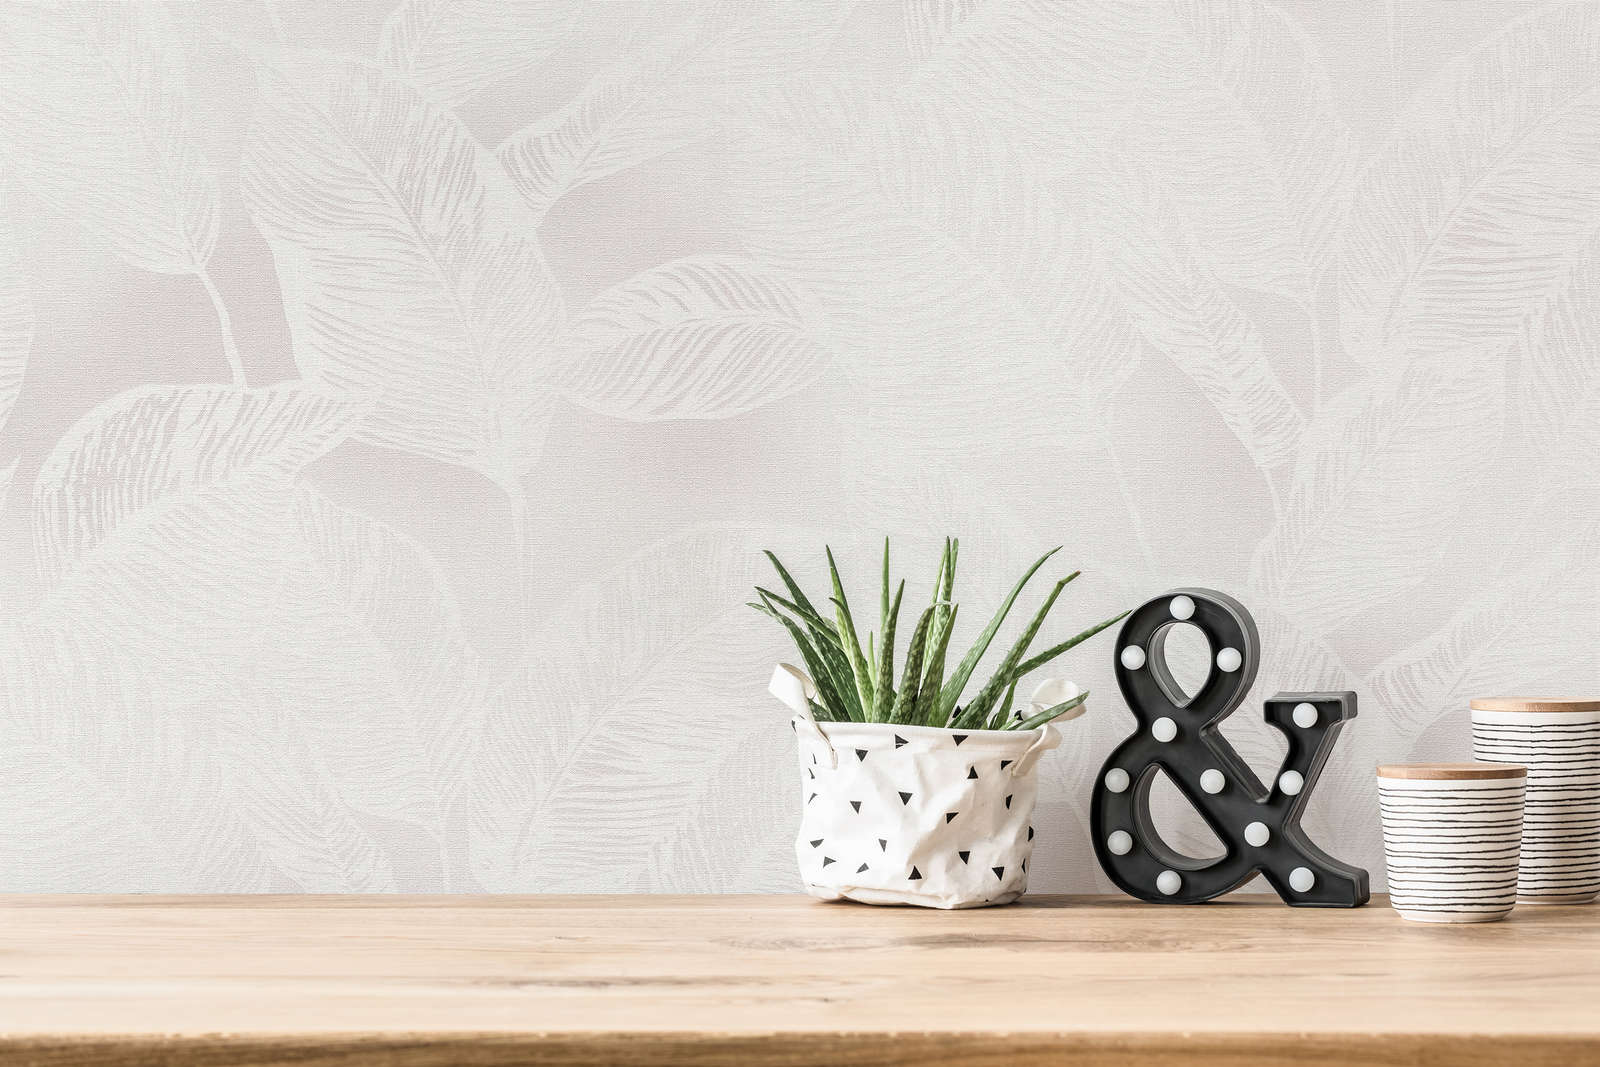             Papel pintado no tejido con hojas sin PVC - blanco, gris
        